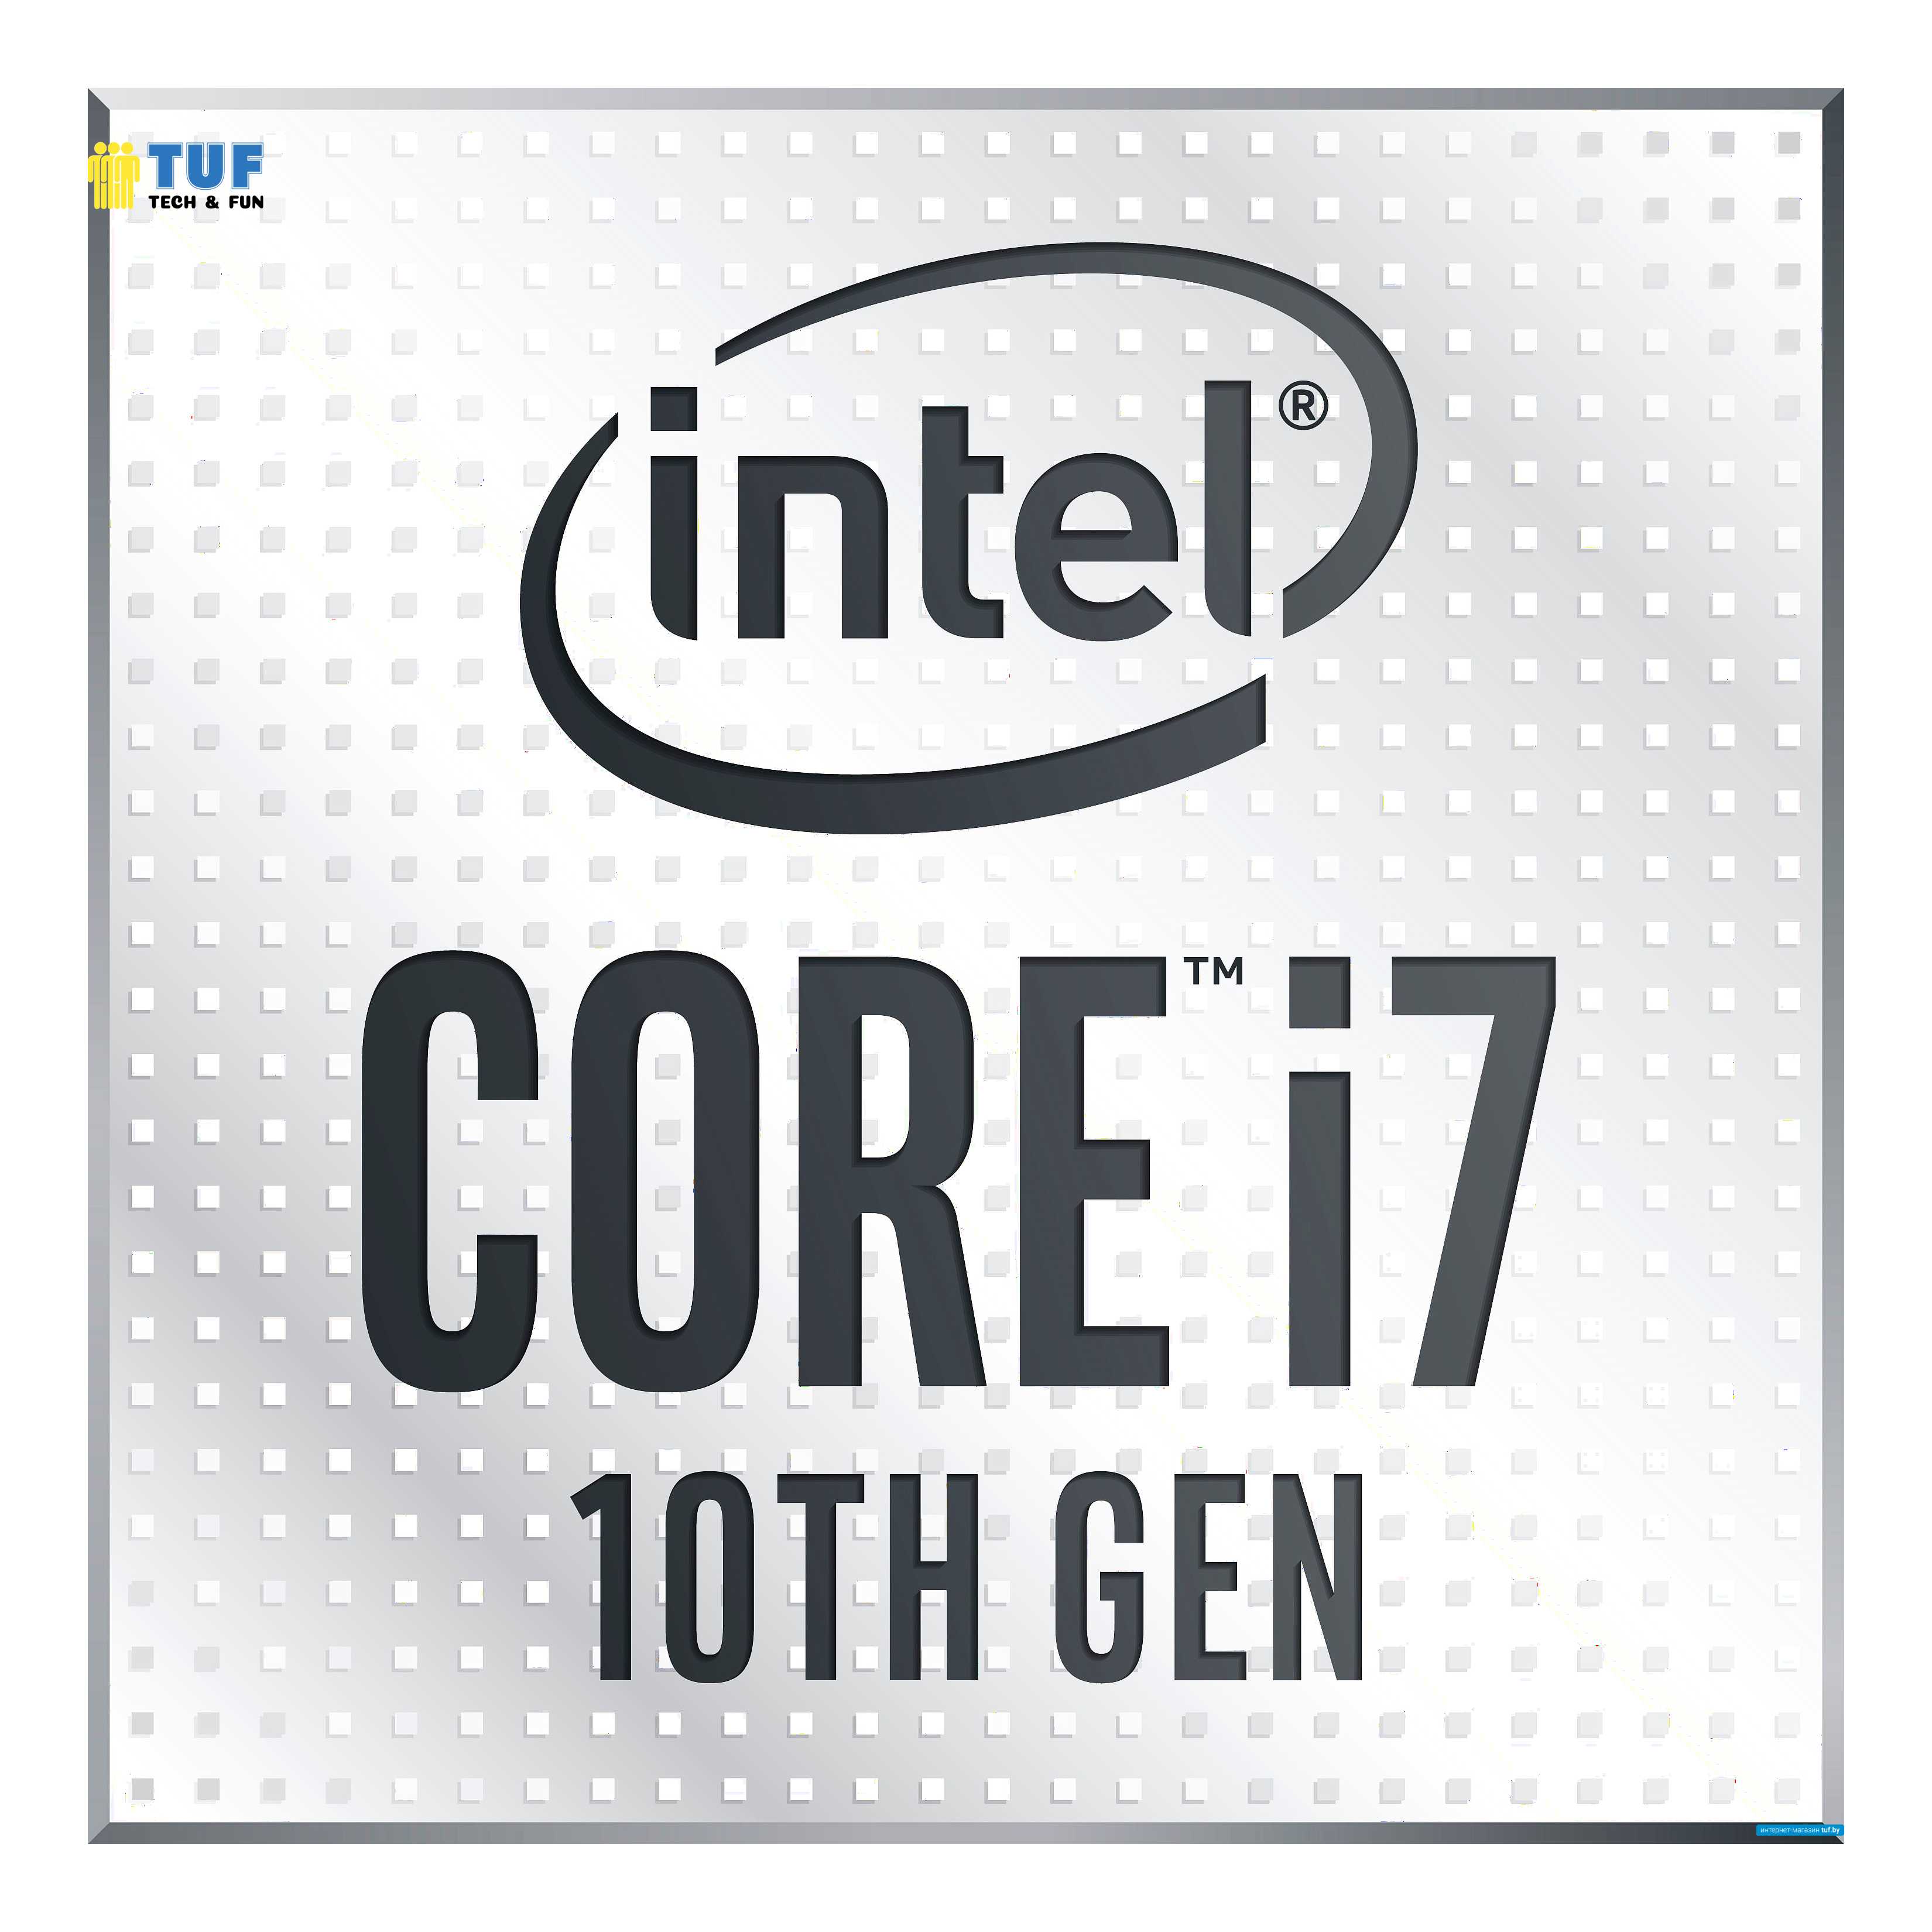 Процессор Intel Core i7-10700